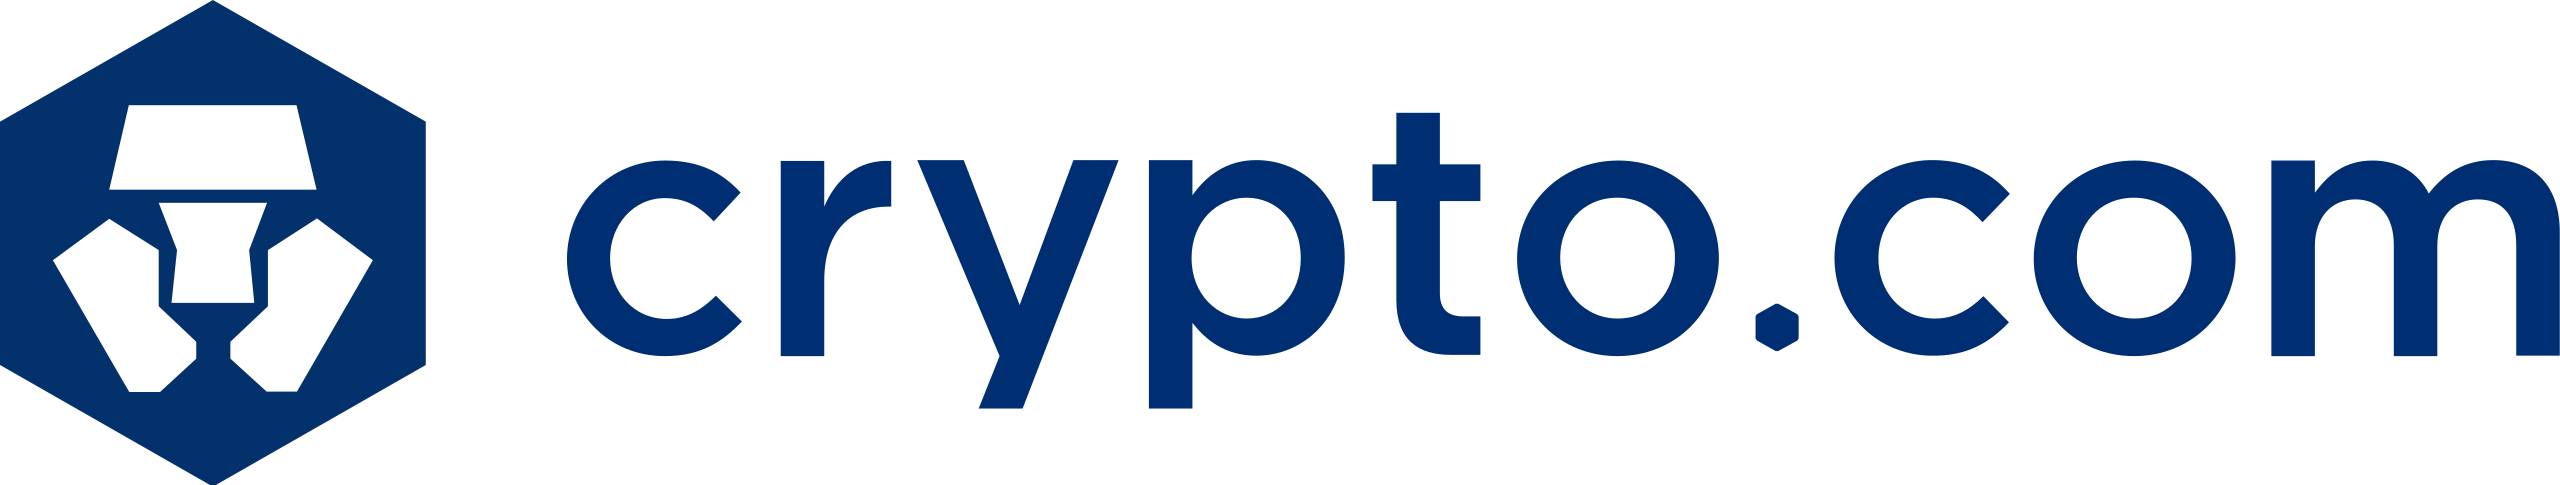 crypto.com-logo-nft